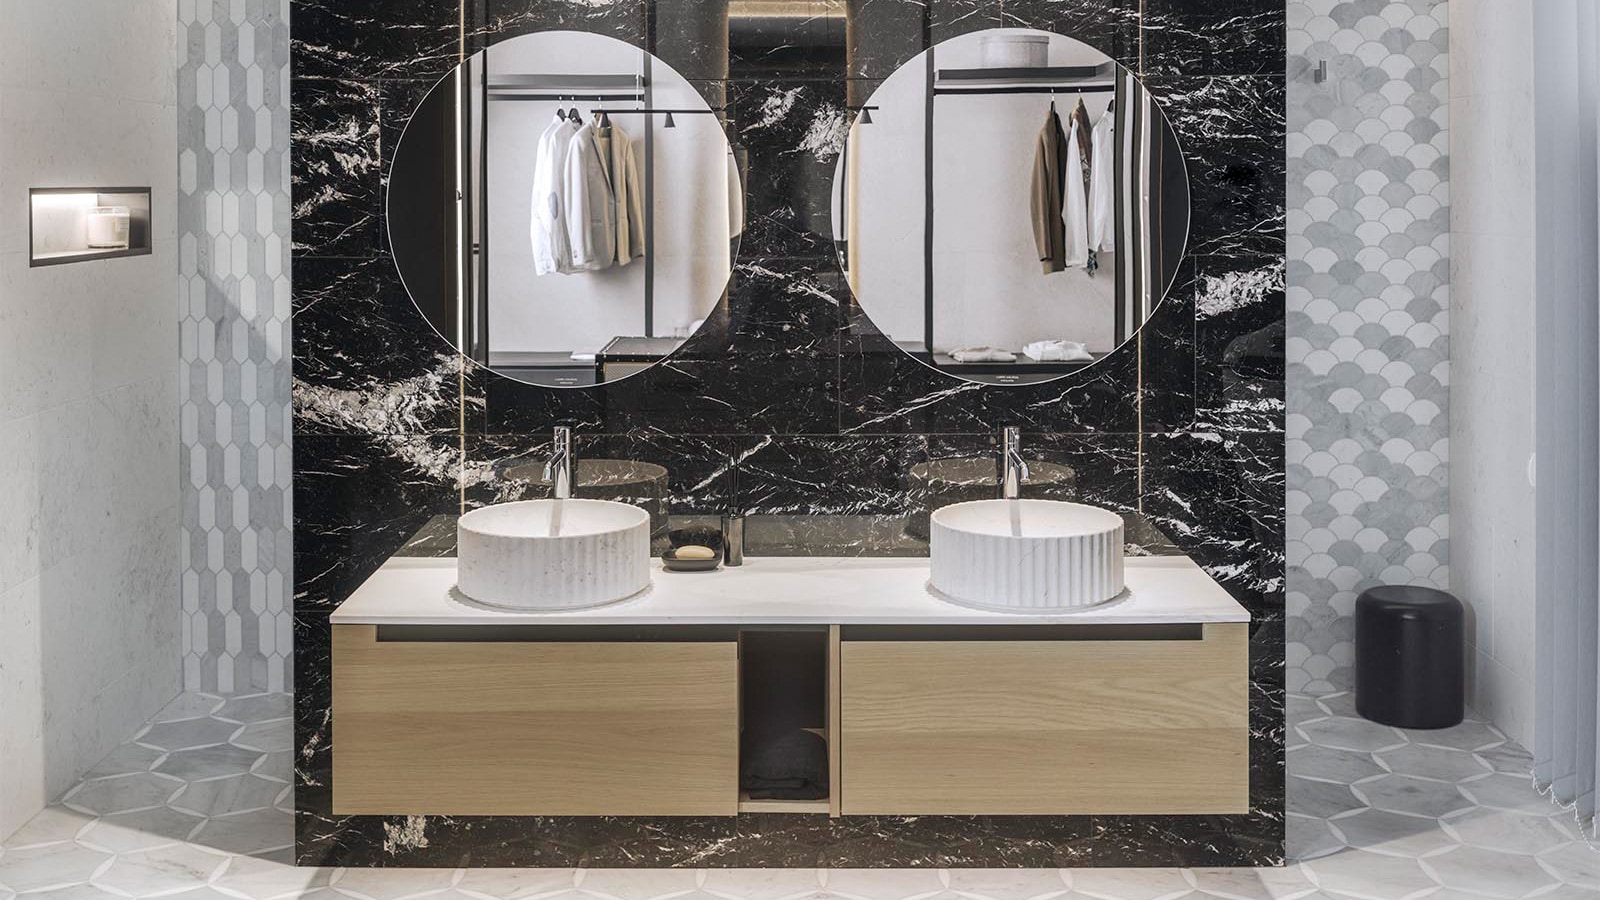 Découvrez la hauteur idéale d'un miroir de salle de bain